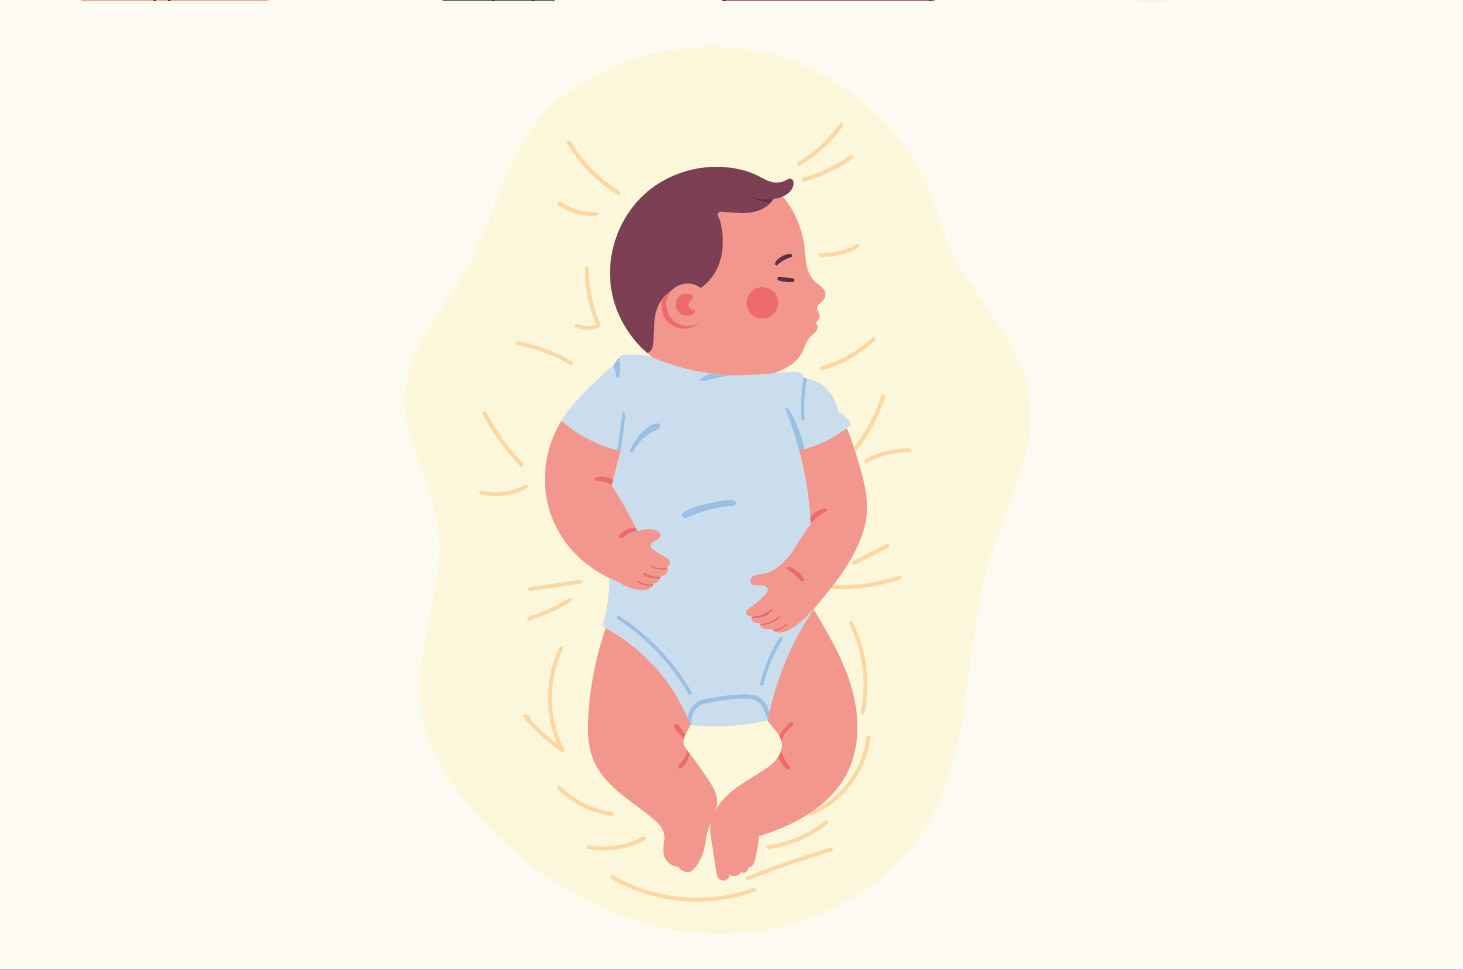 아기는 어둡거나 밝은 방에서 자는 것이 더 낫습니까?